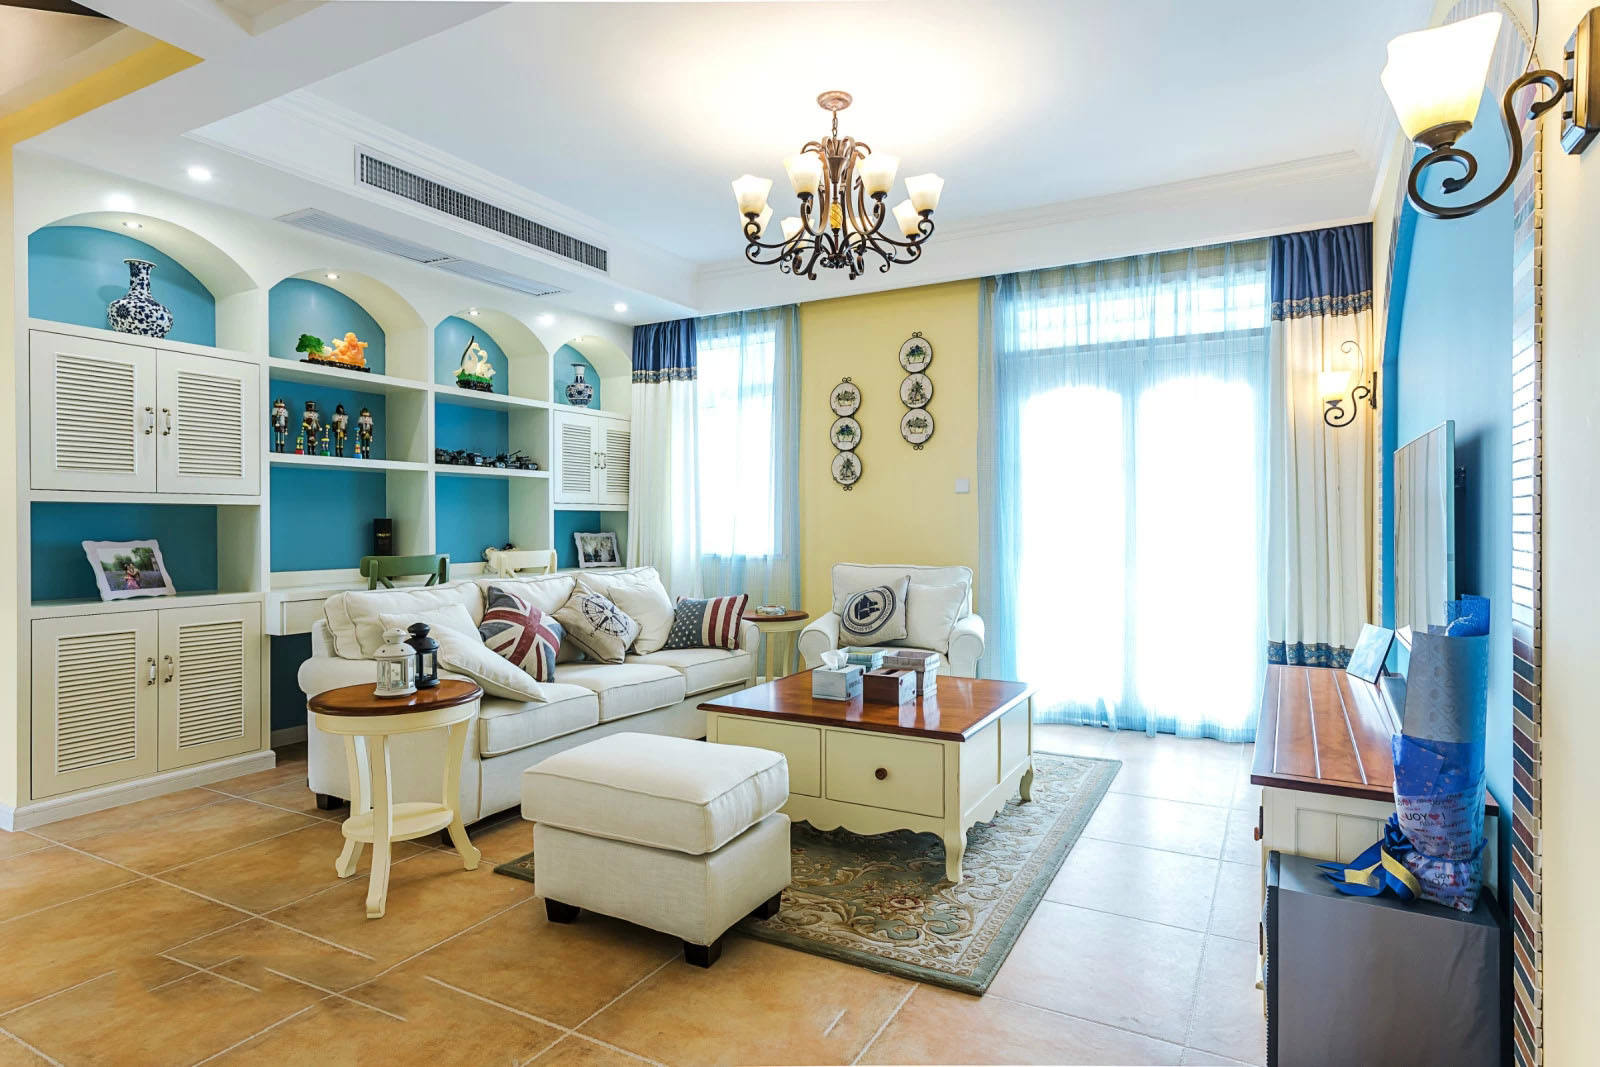 客厅,其它,地中海,黄色,蓝色